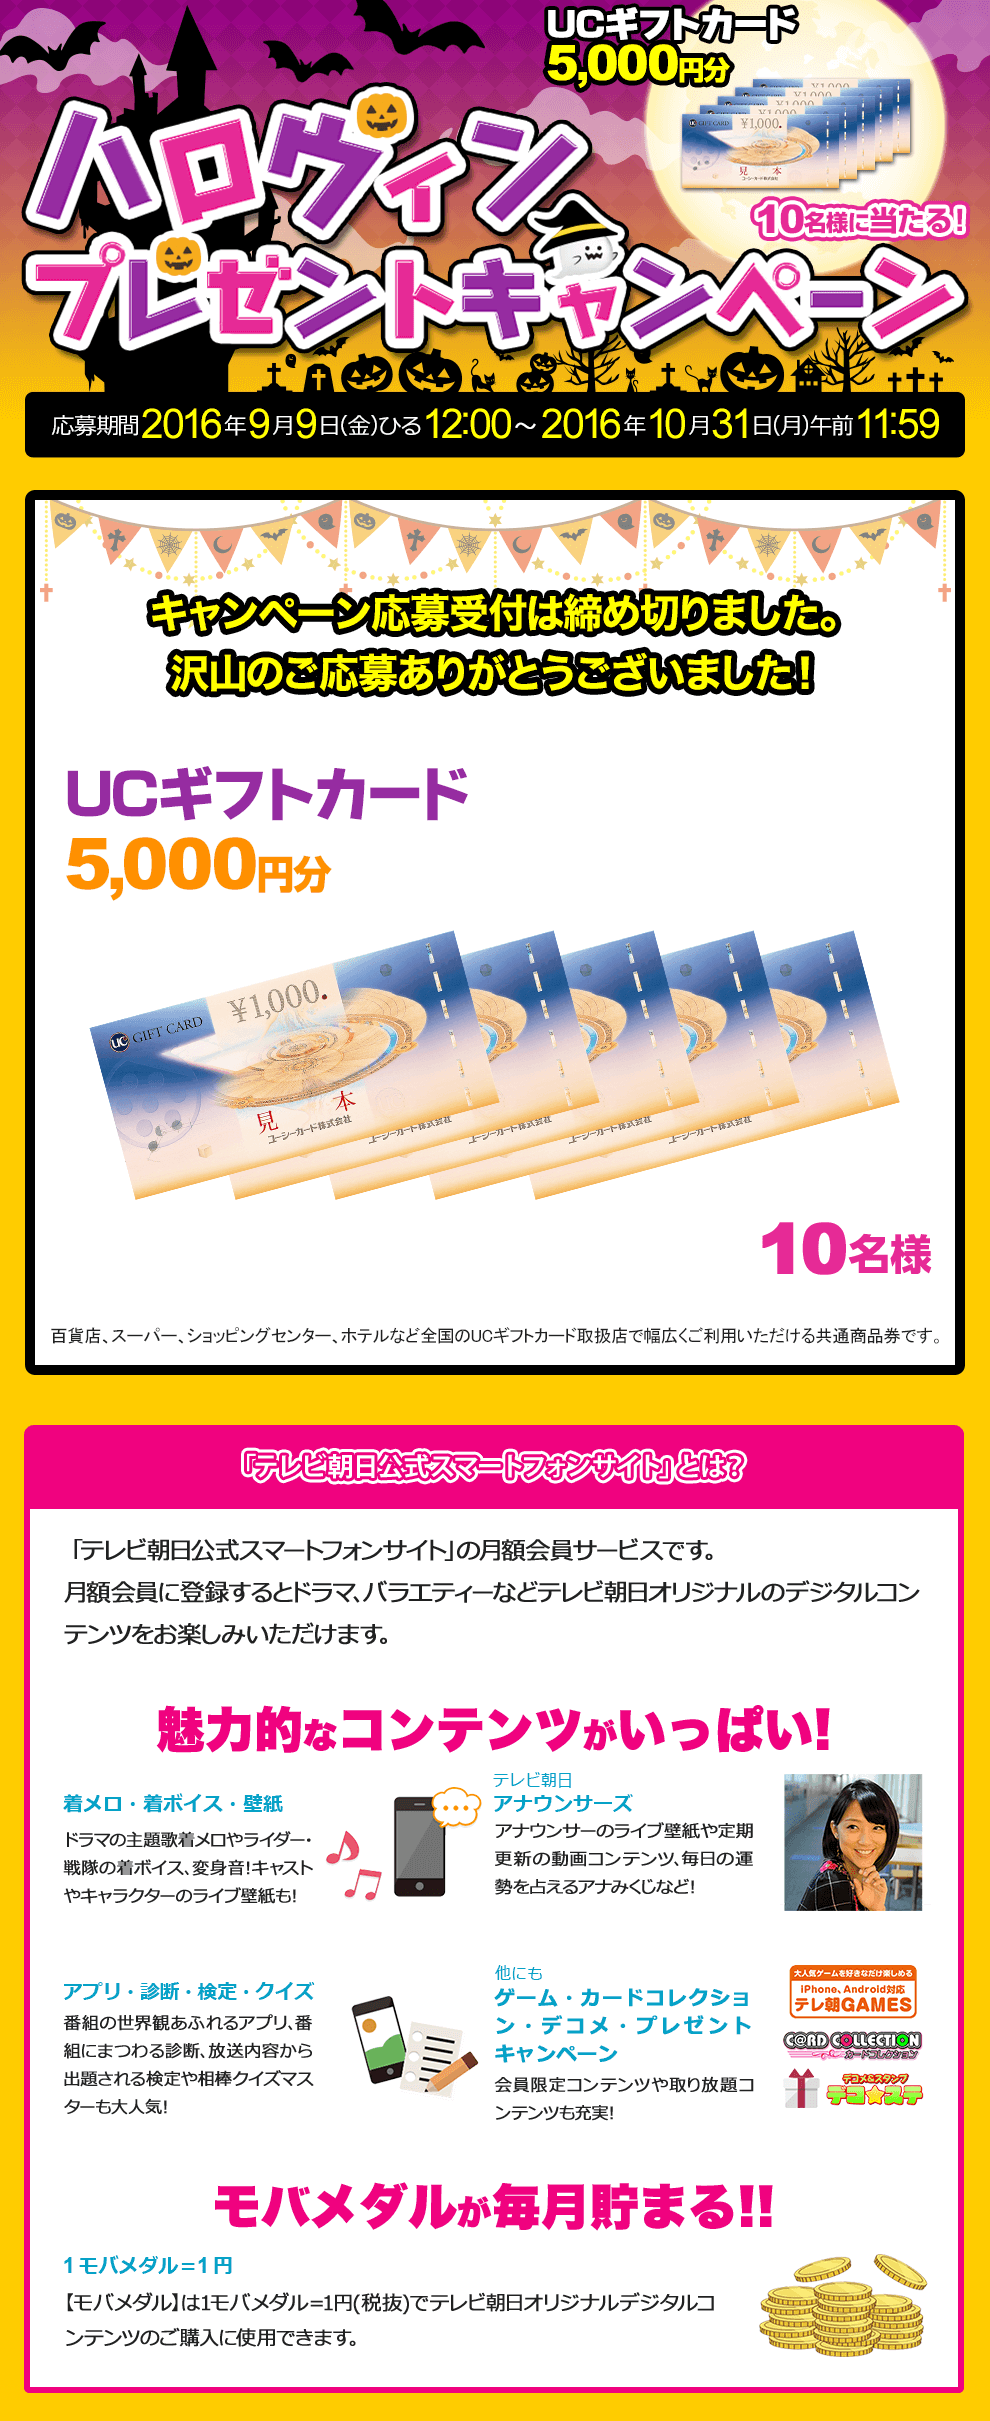 ハロウィンプレゼントキャンペーン UCギフトカード5,000円分 10名様